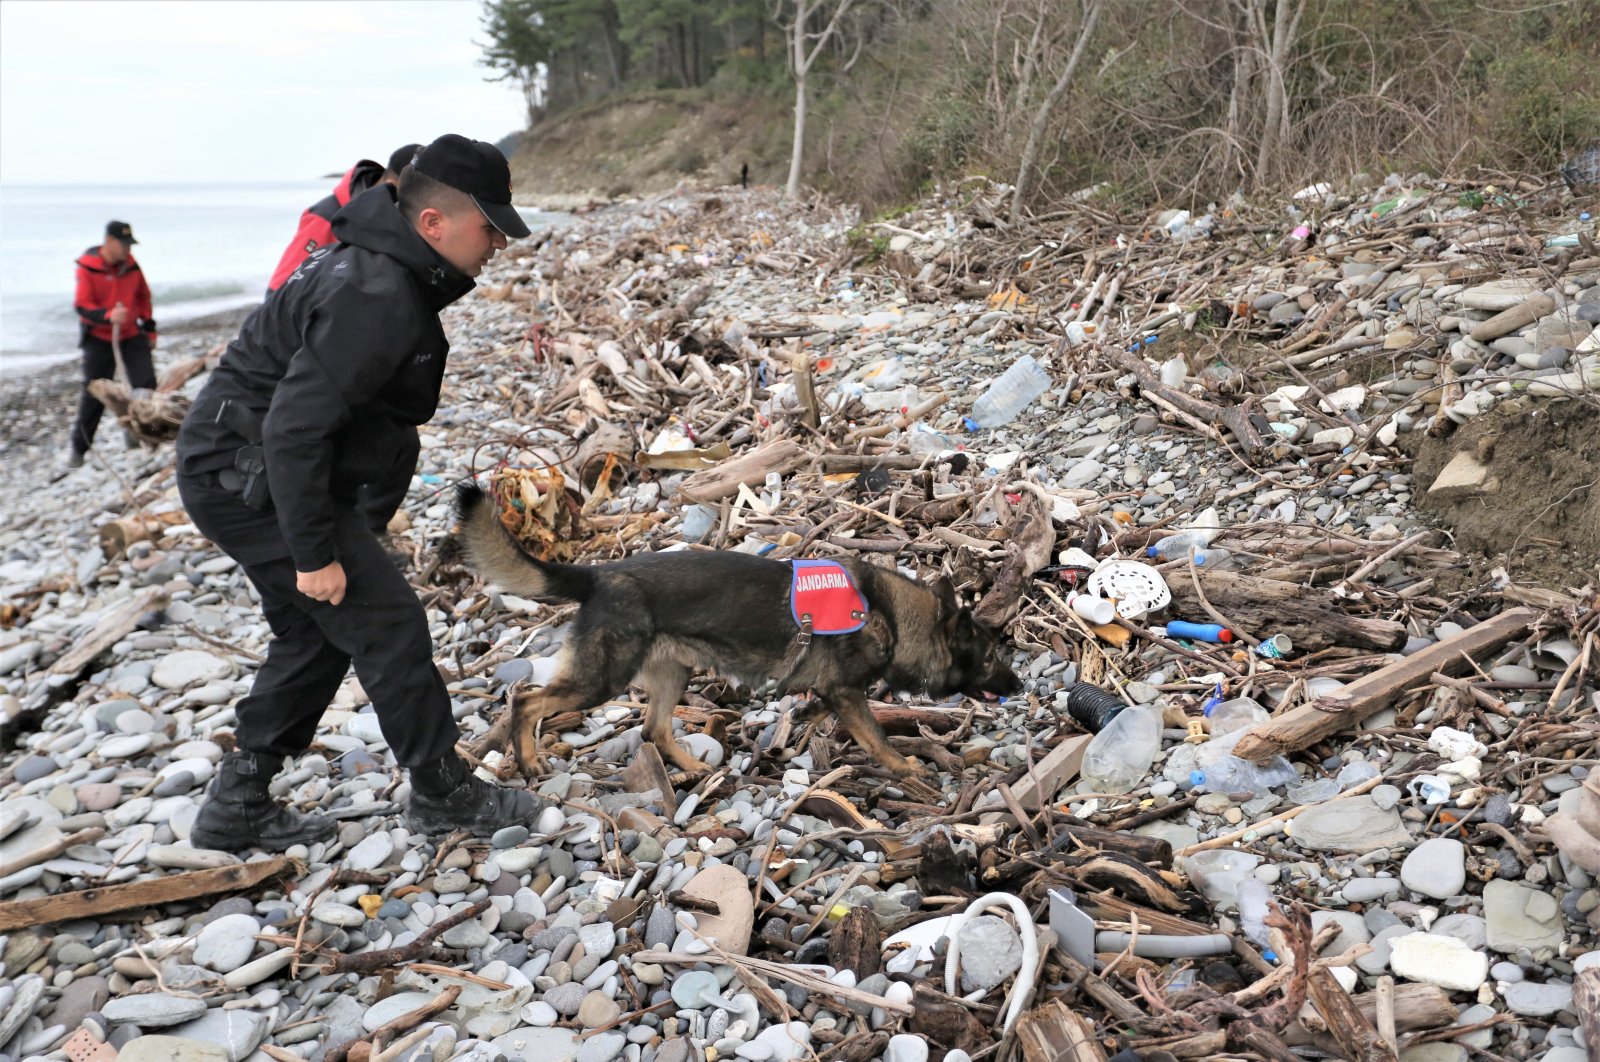 Mayat ditemukan beberapa bulan setelah banjir Turki Utara, mengarah ke pencarian lebih lanjut